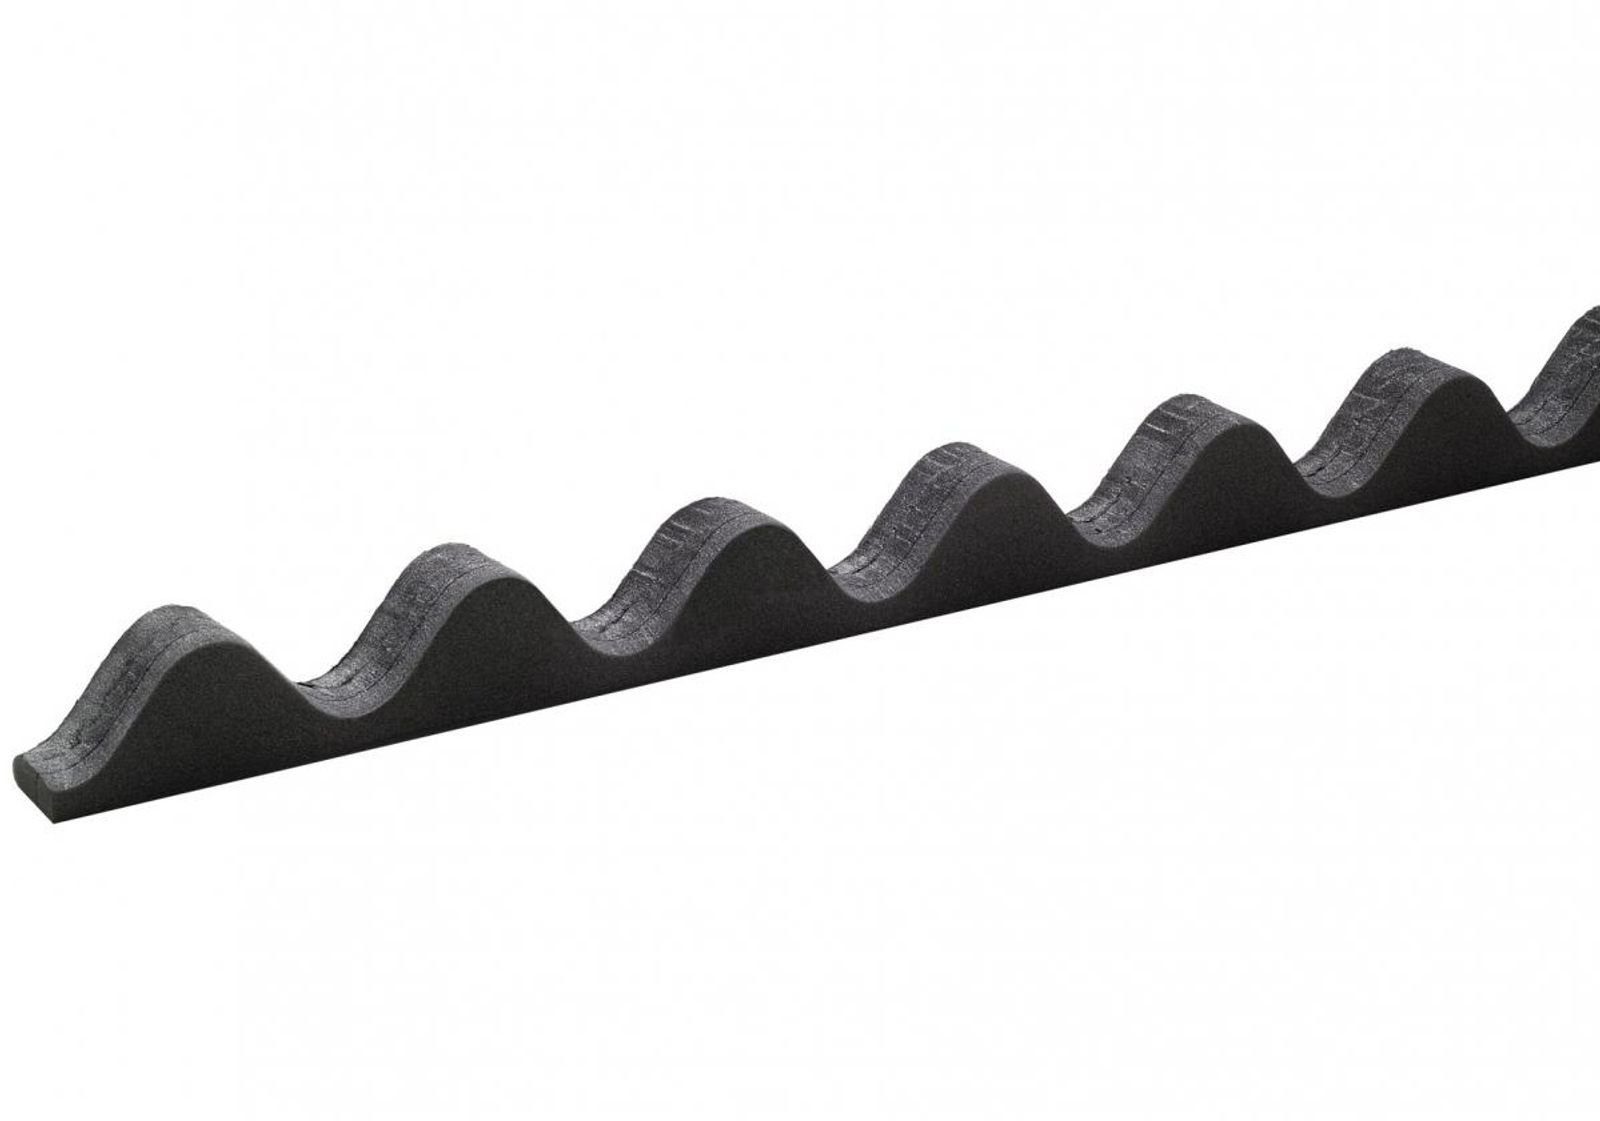 Onduline Dachpappe Onduline Easyline Zahnleiste 100cm Profilfüller aus Zellpolyethylen Zahnstange First Traufe Profil 95/38, wellig, (1-St)